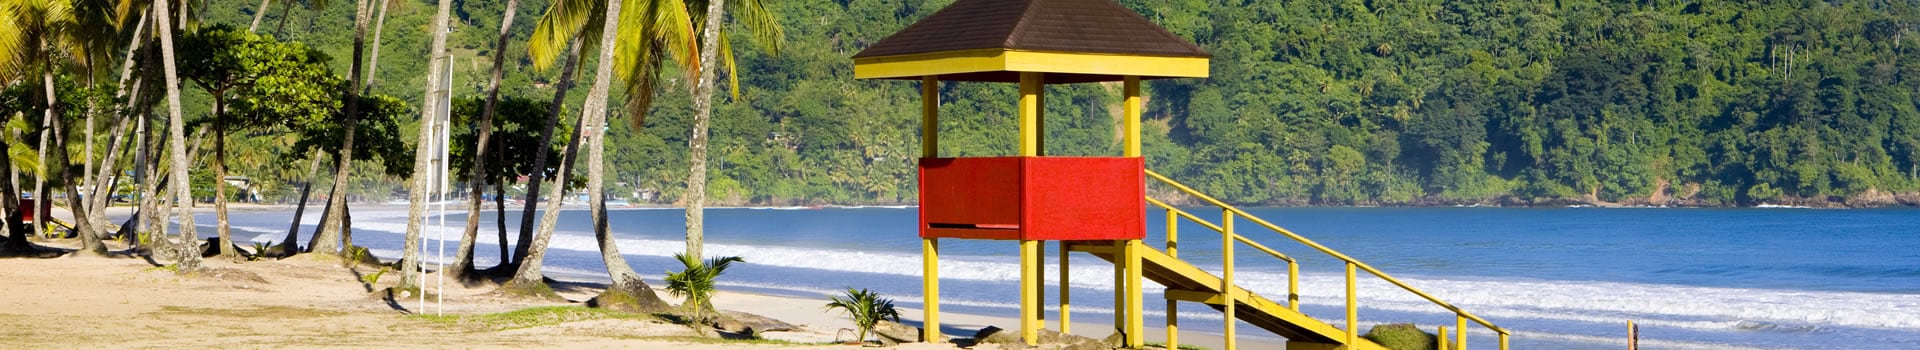 Trindade E Tobago